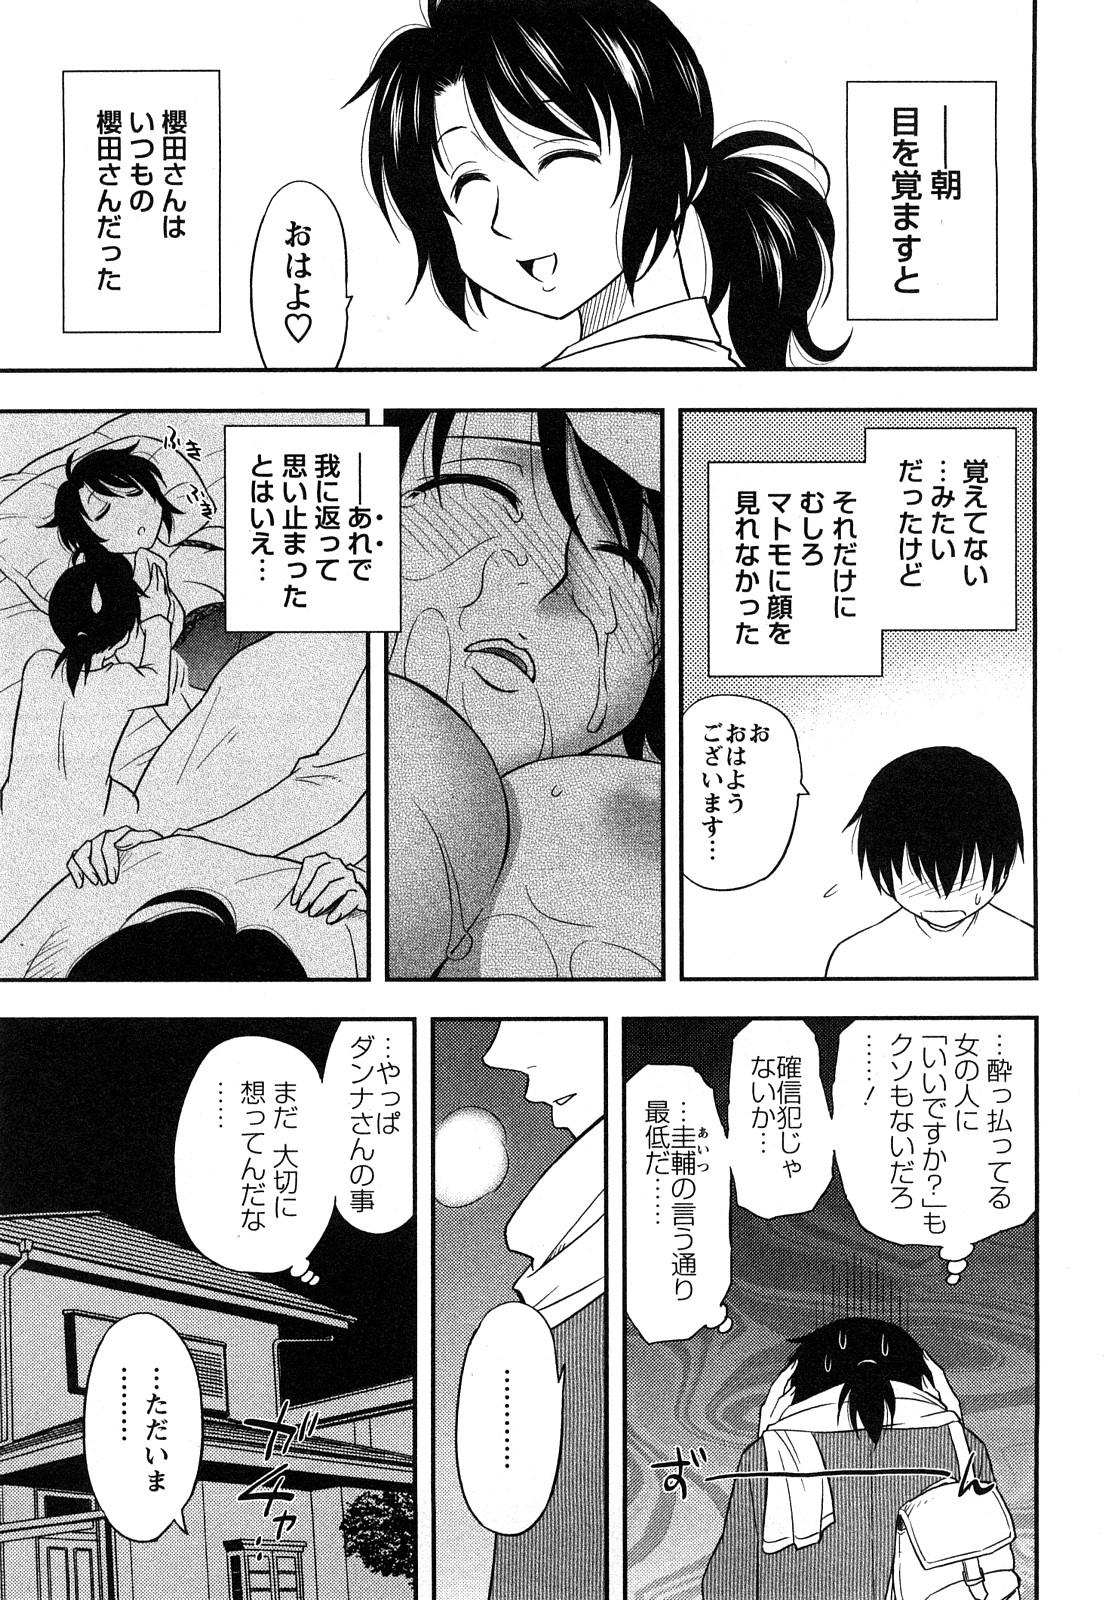 Sakurada-san to Boku no Koto Vol.1 34